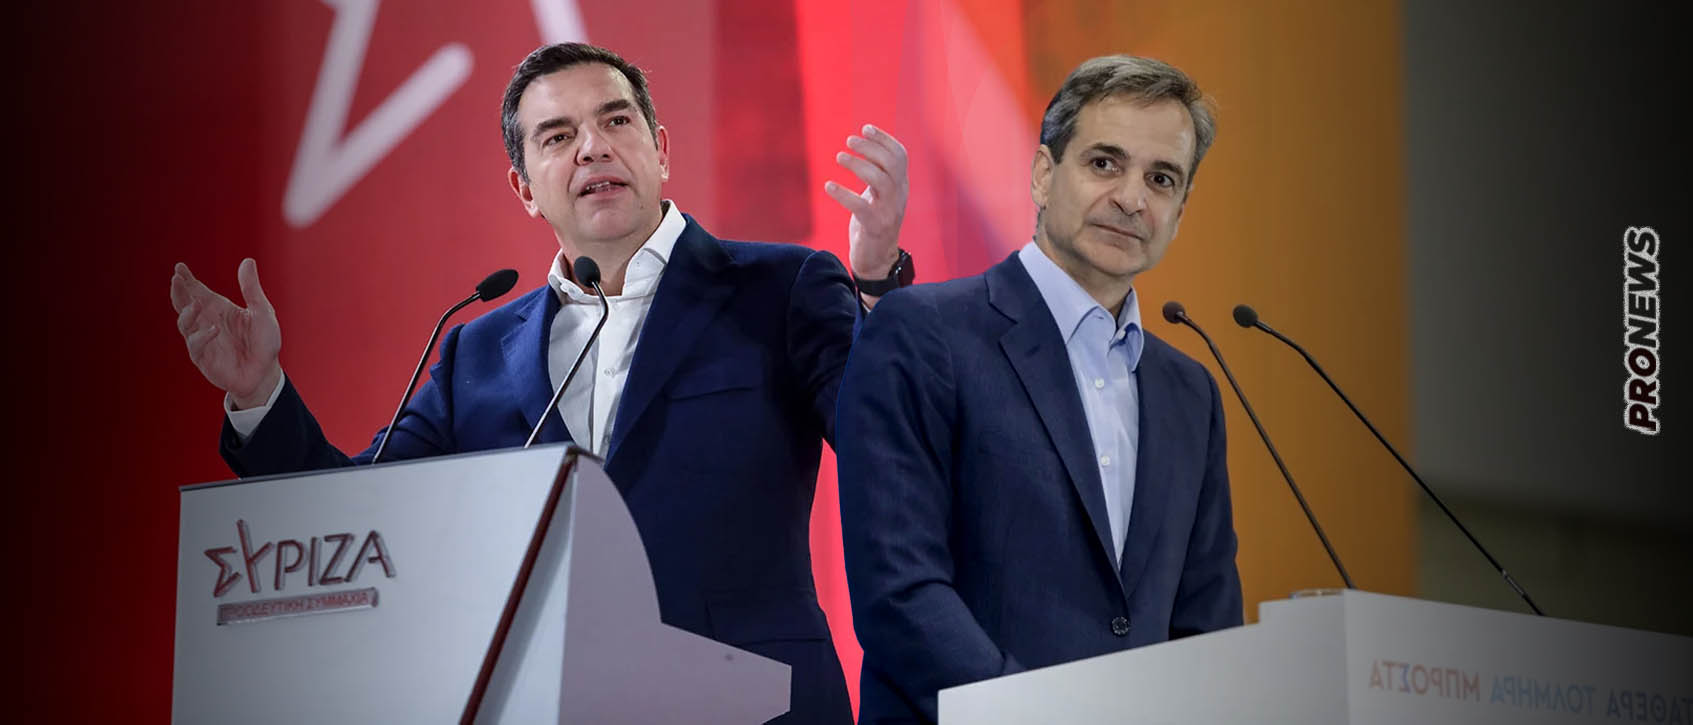 Ο λόγος που «κατέρρευσε» ο ΣΥΡΙΖΑ στις εκλογές – Γιατί η ΝΔ έφτασε σε θρίαμβο – Η δημοσκόπηση που δίνει την απάντηση